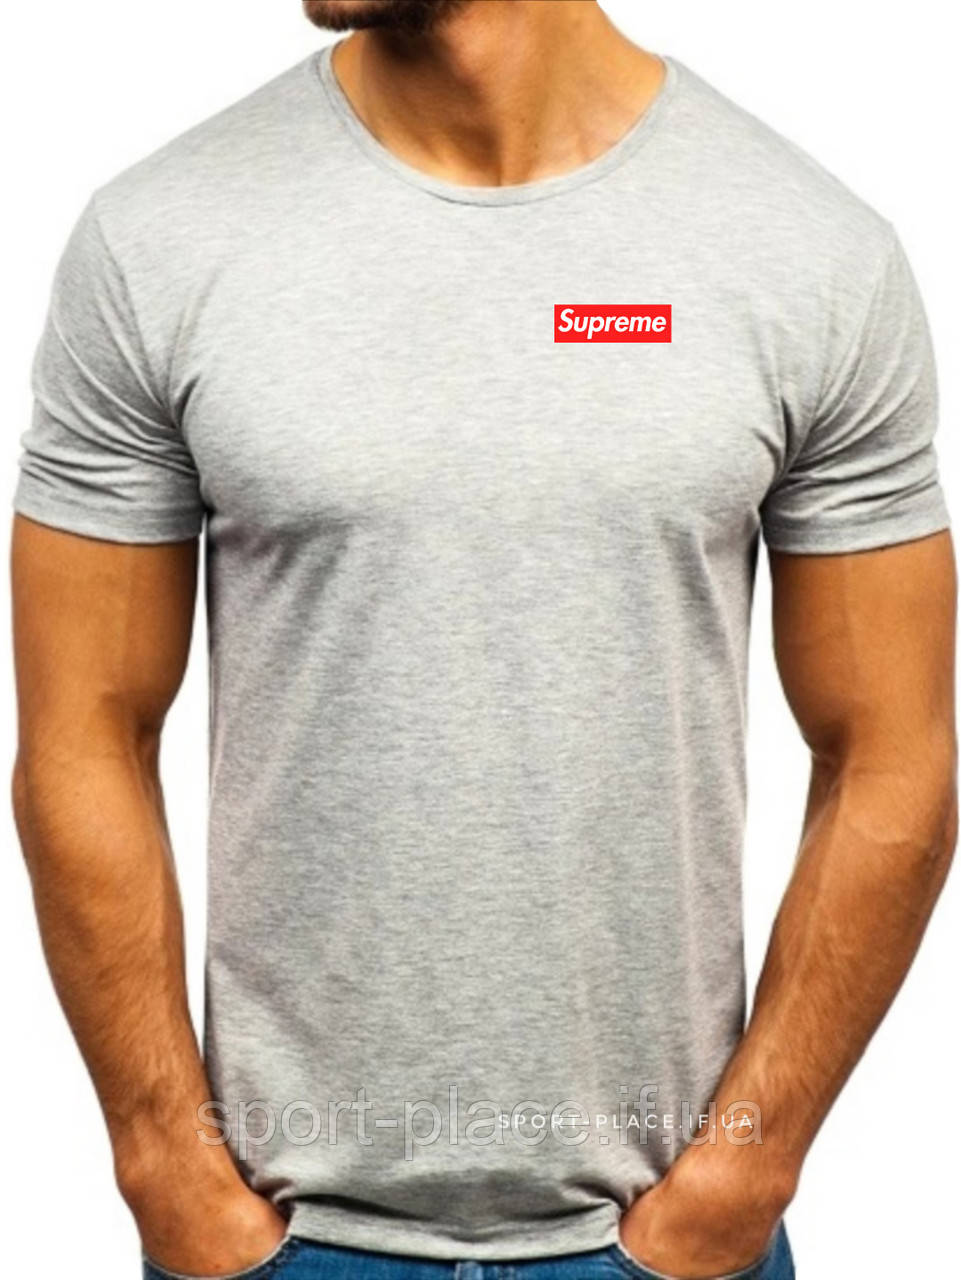 Чоловіча футболка Supreme (Ідеальна) сіра (маленька емблема) бавовна